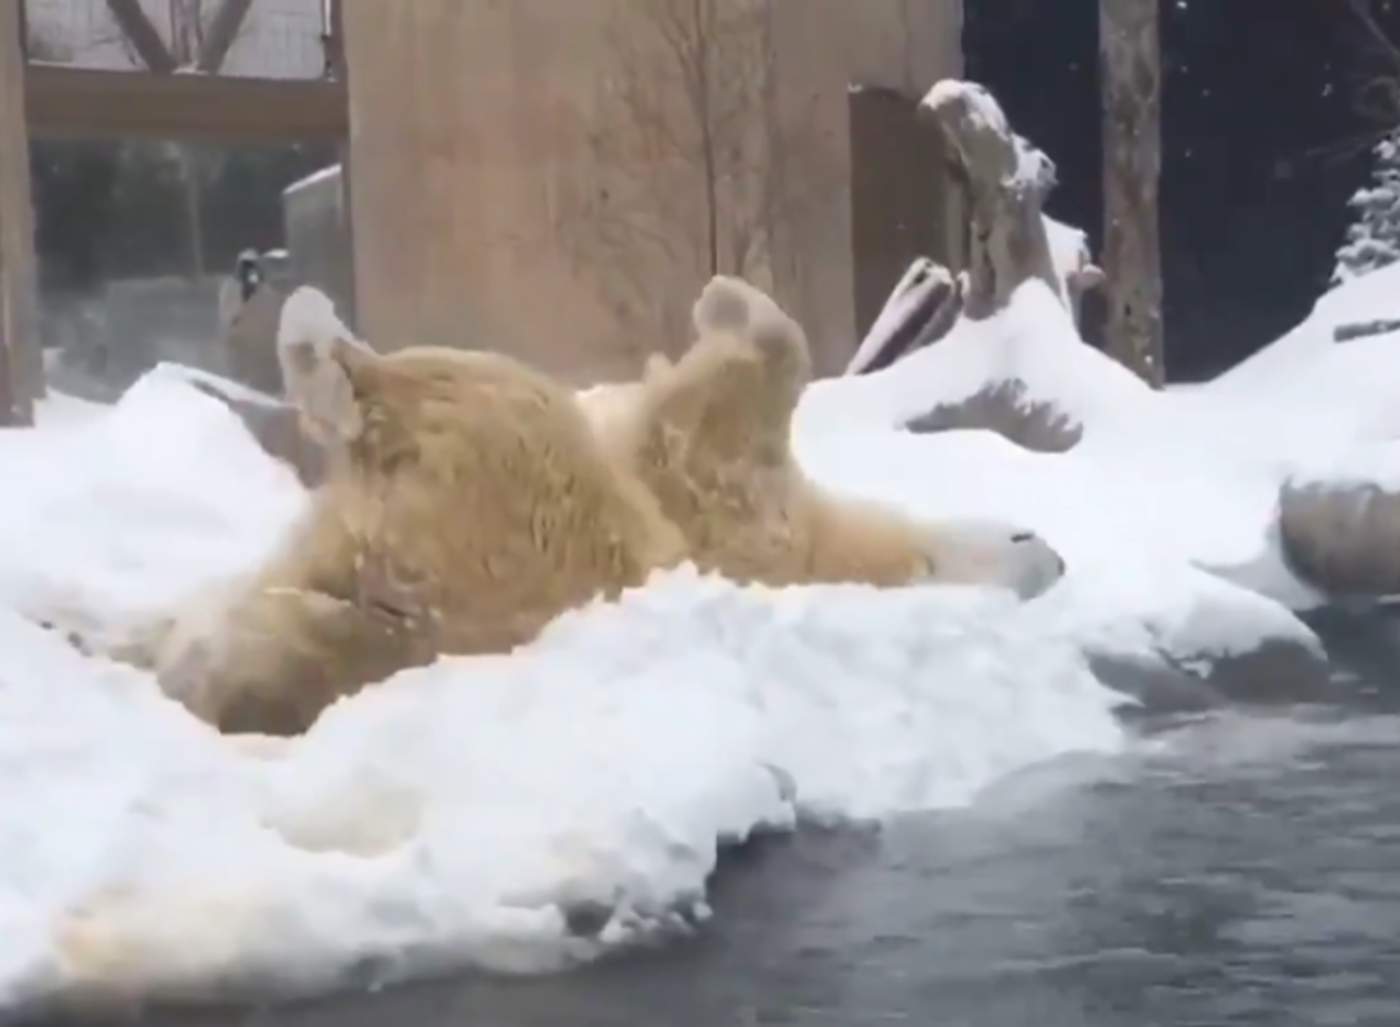 Encantador oso polar juega en la nieve en zoológico